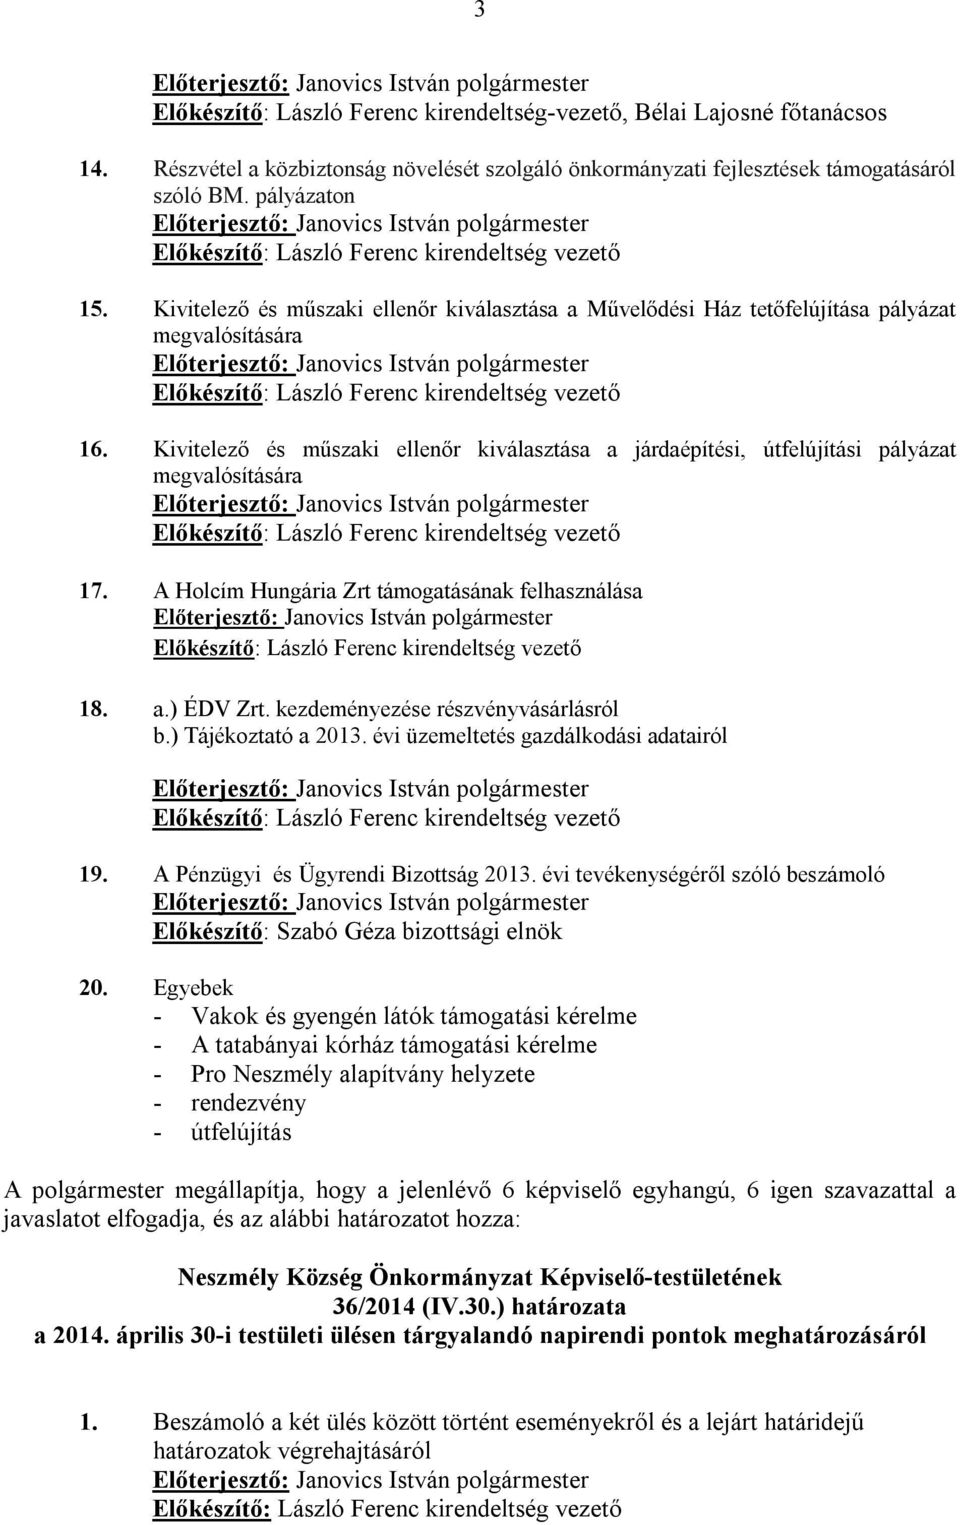 Kivitelező és műszaki ellenőr kiválasztása a járdaépítési, útfelújítási pályázat megvalósítására 17. A Holcím Hungária Zrt támogatásának felhasználása 18. a.) ÉDV Zrt.